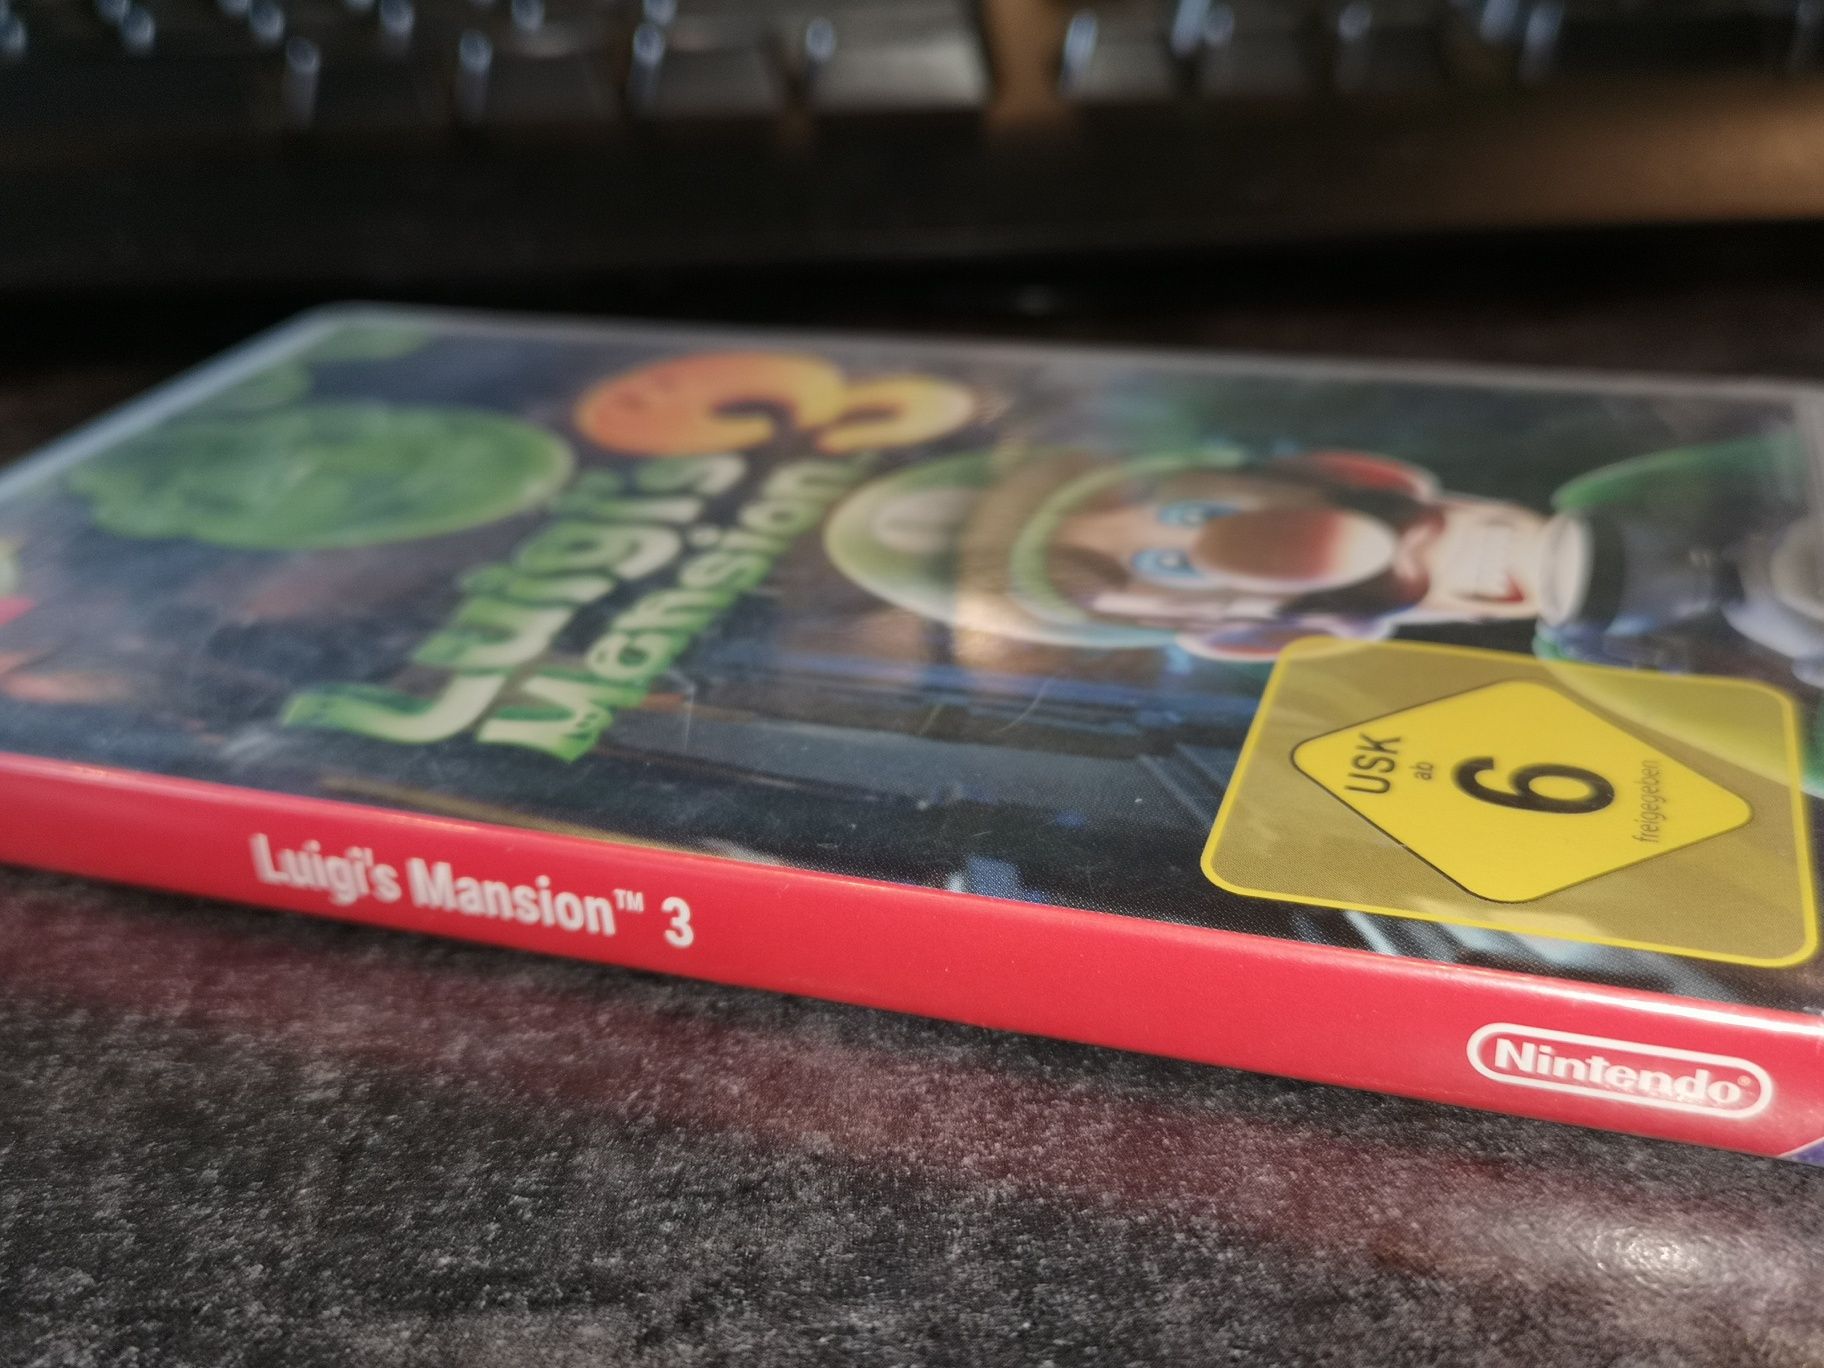 Luigi Mansion 3 SWITCH Nintendo gra (możliwość wymiany) kioskzgrami